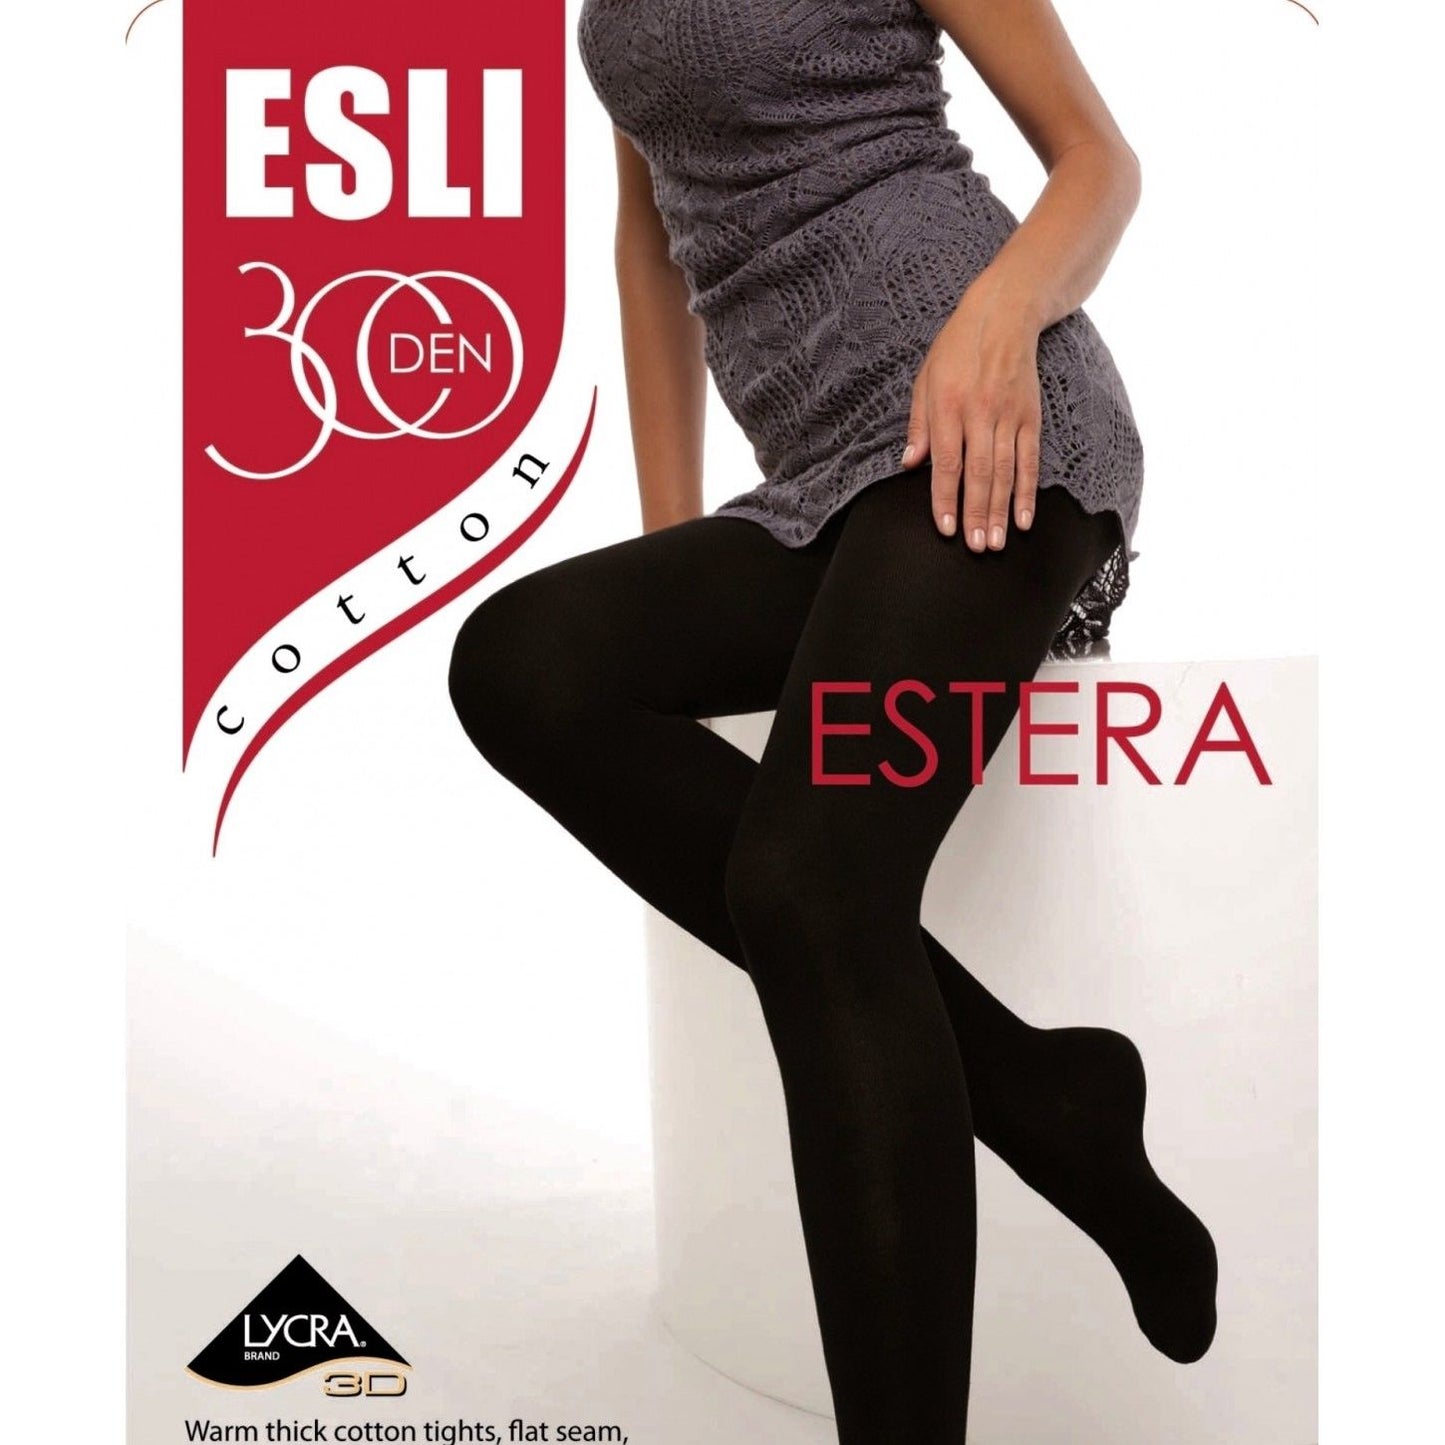 Conte/Esli Estera 300 Den - Cotton Warm Opaque Women's Tights (14С-65СПЕ) No Pack.